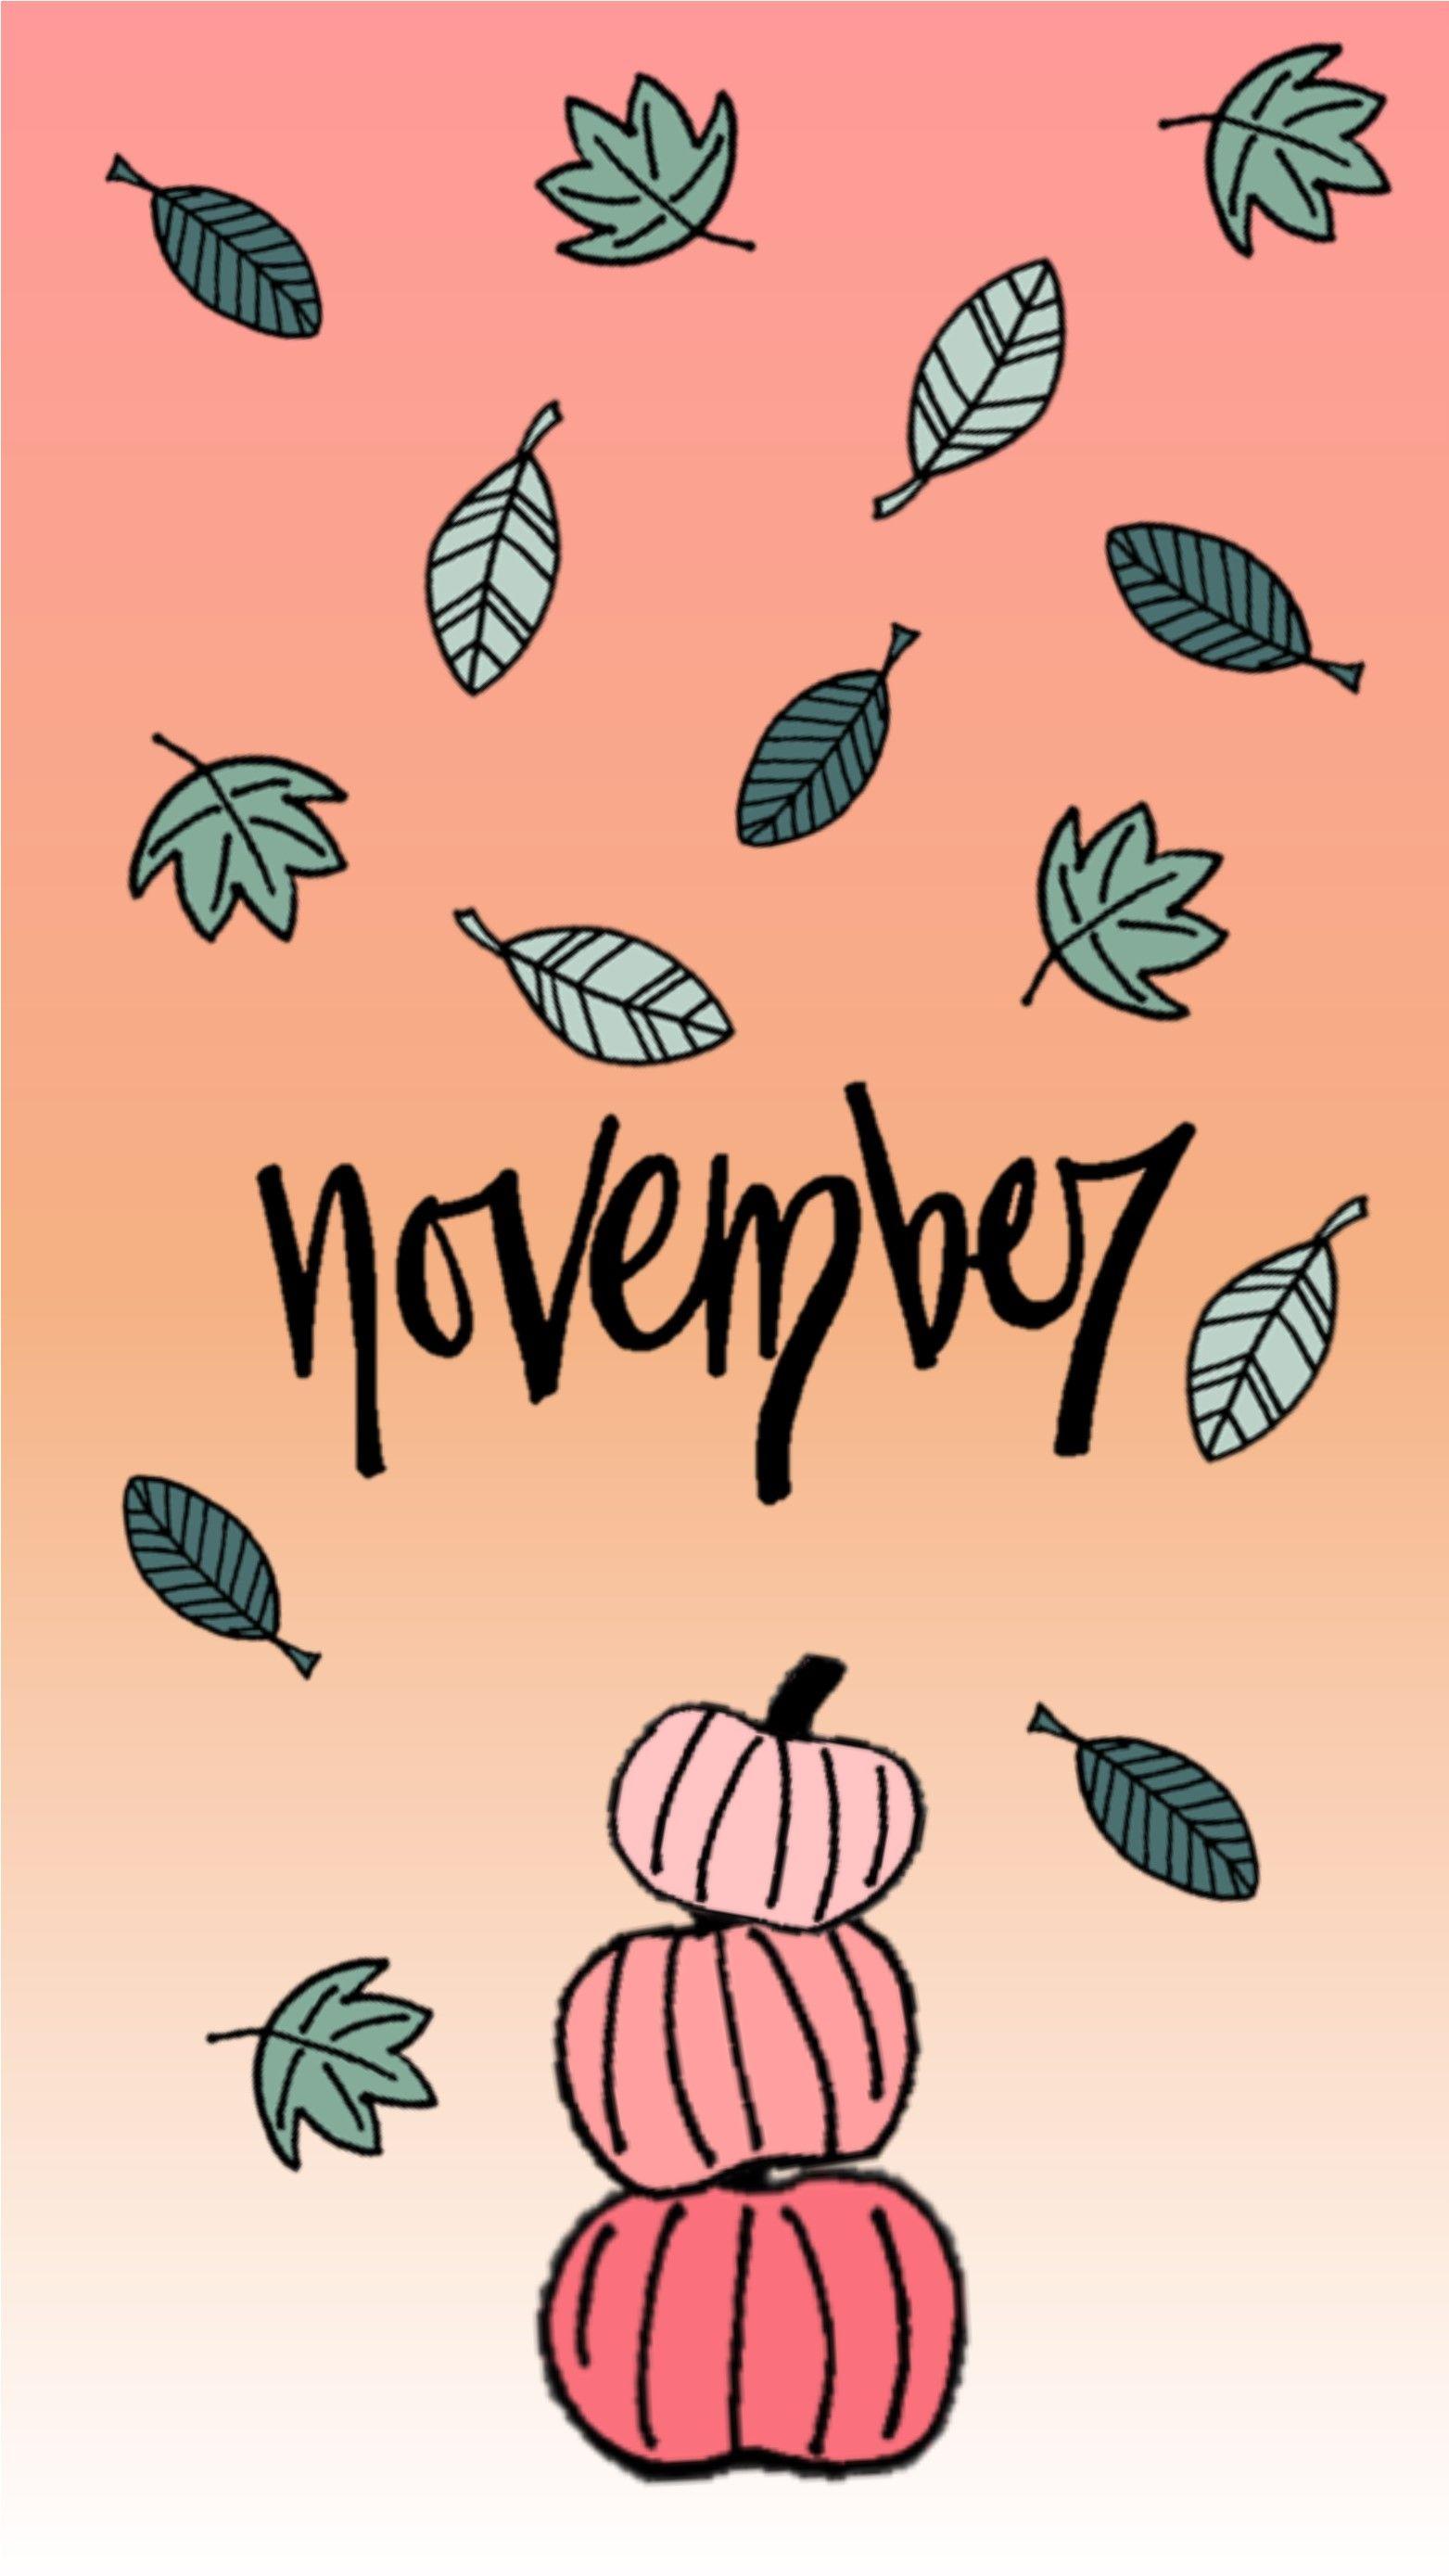 November Wallpapers iPhone  PixelsTalkNet